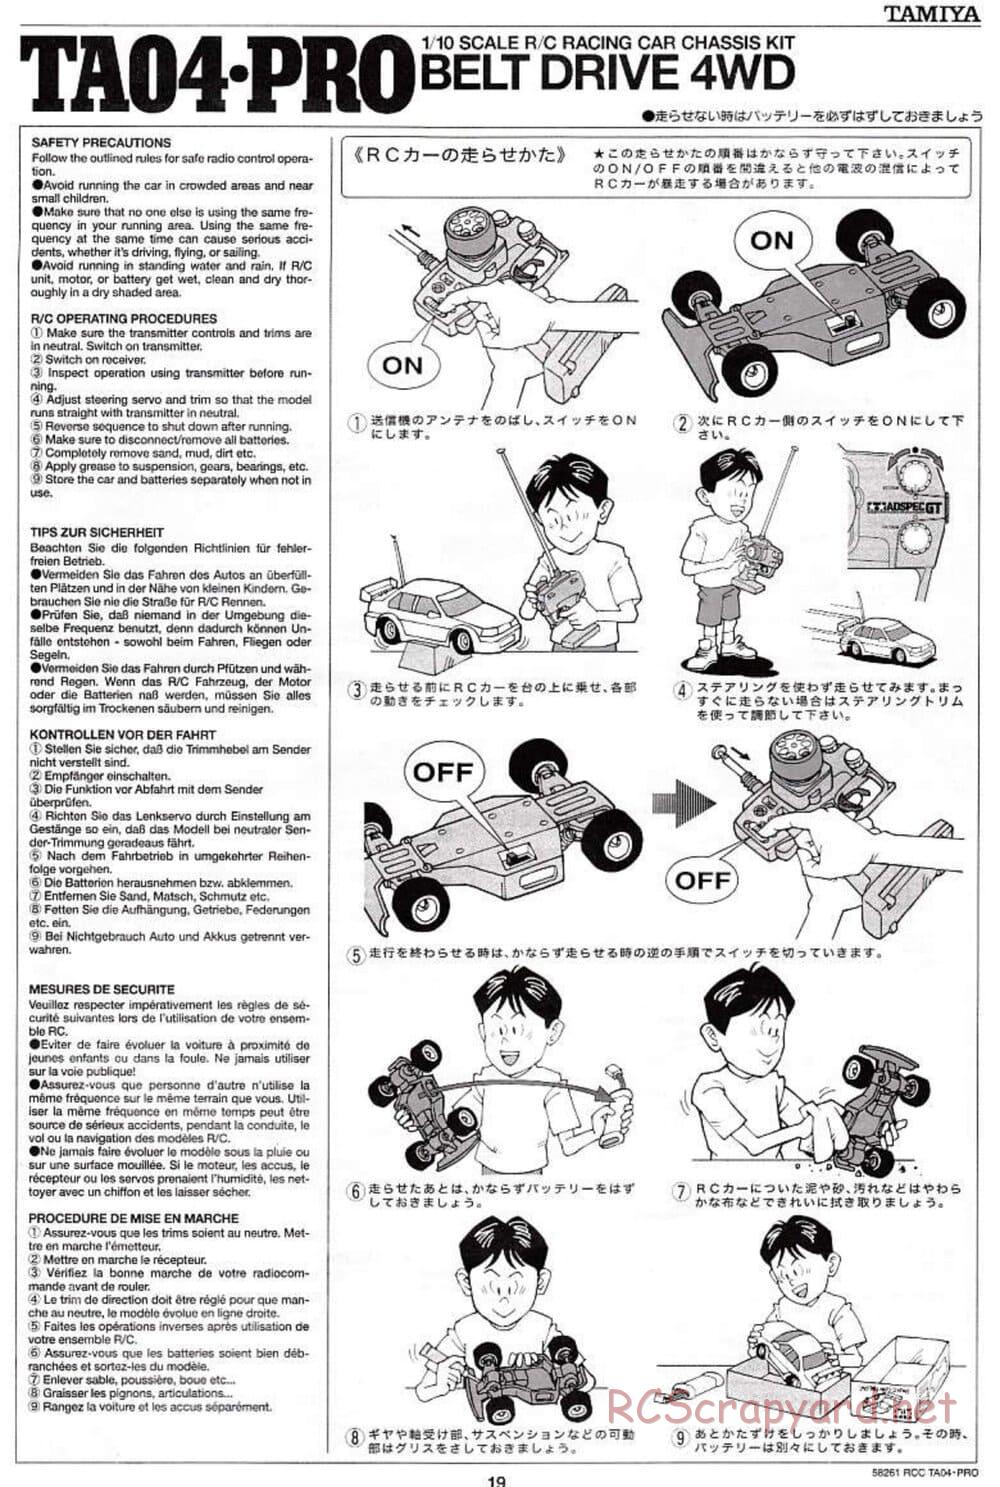 Tamiya - TA-04 Pro Chassis - Manual - Page 19